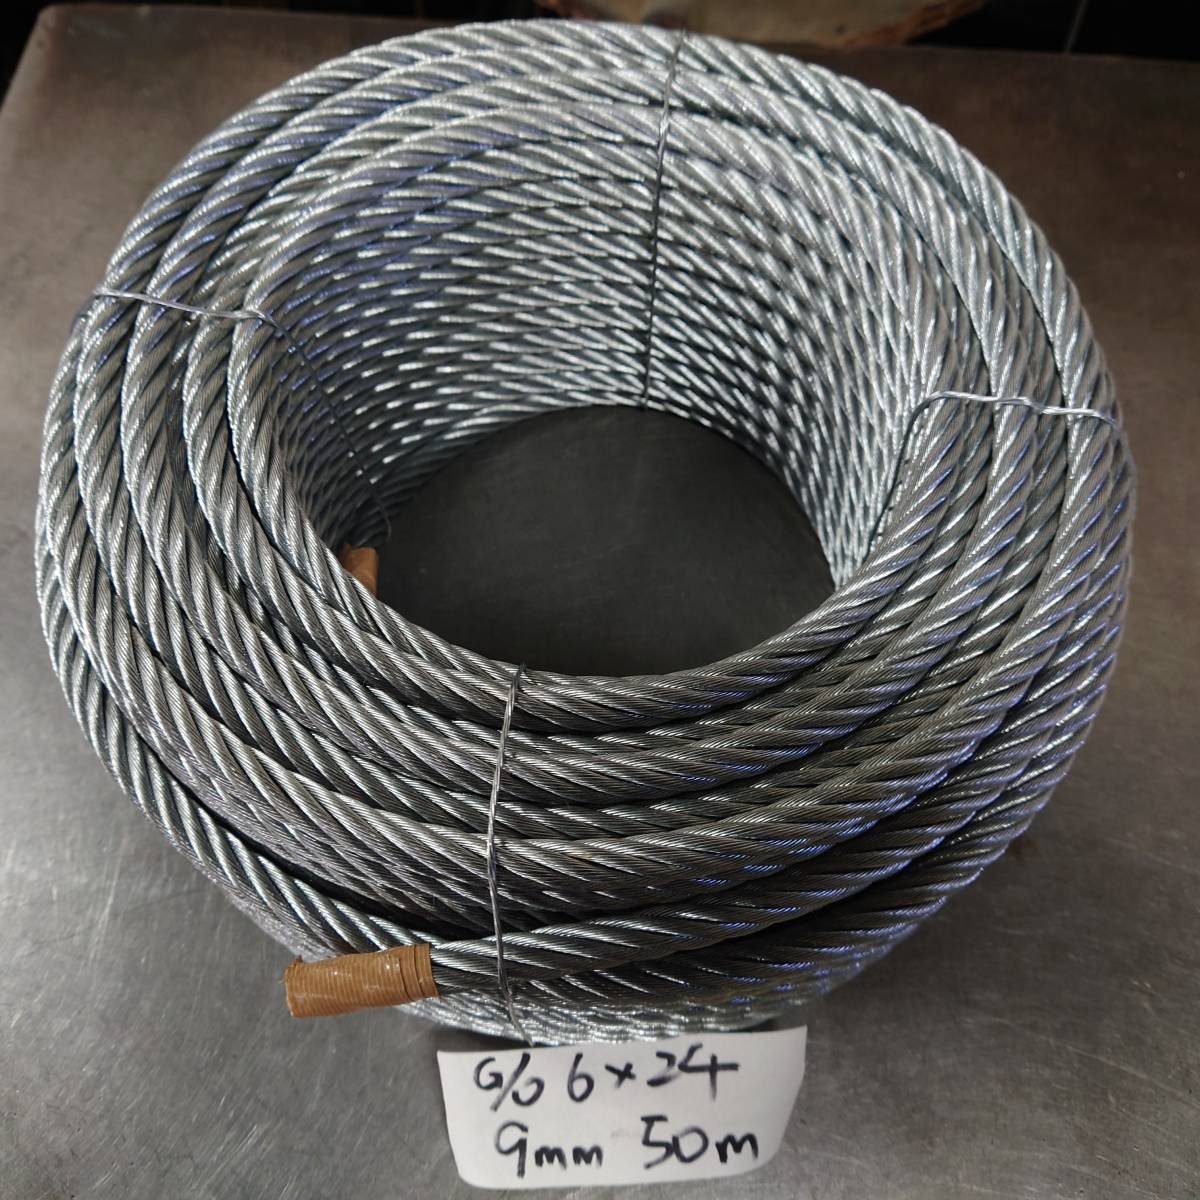 へのお ＴＲＵＳＣＯ メッキ付ワイヤロープ, 52% OFF